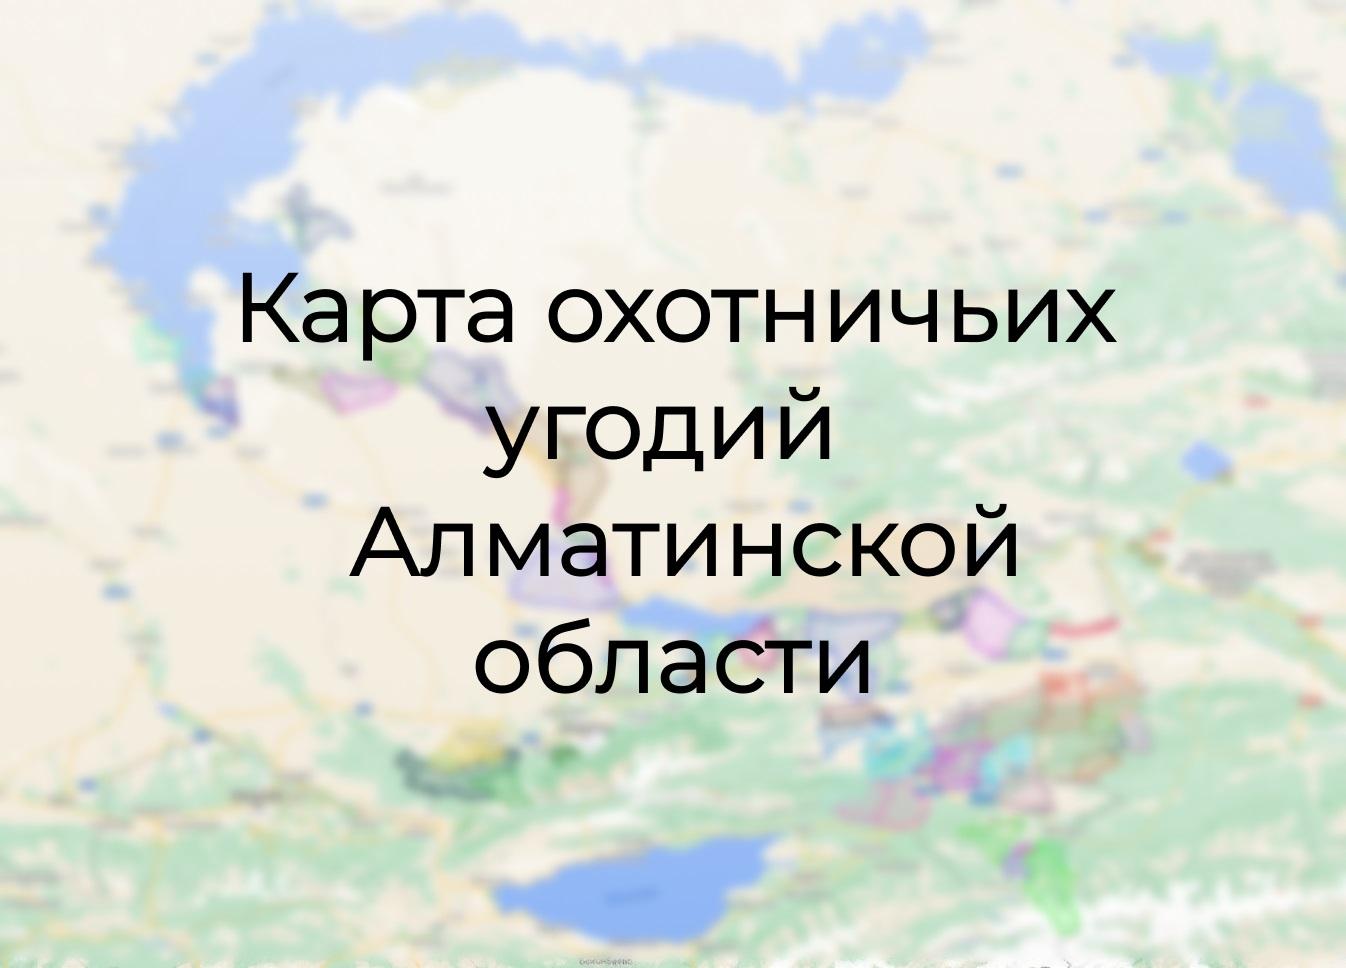 Карта охотничьих угодий в Алматинской области